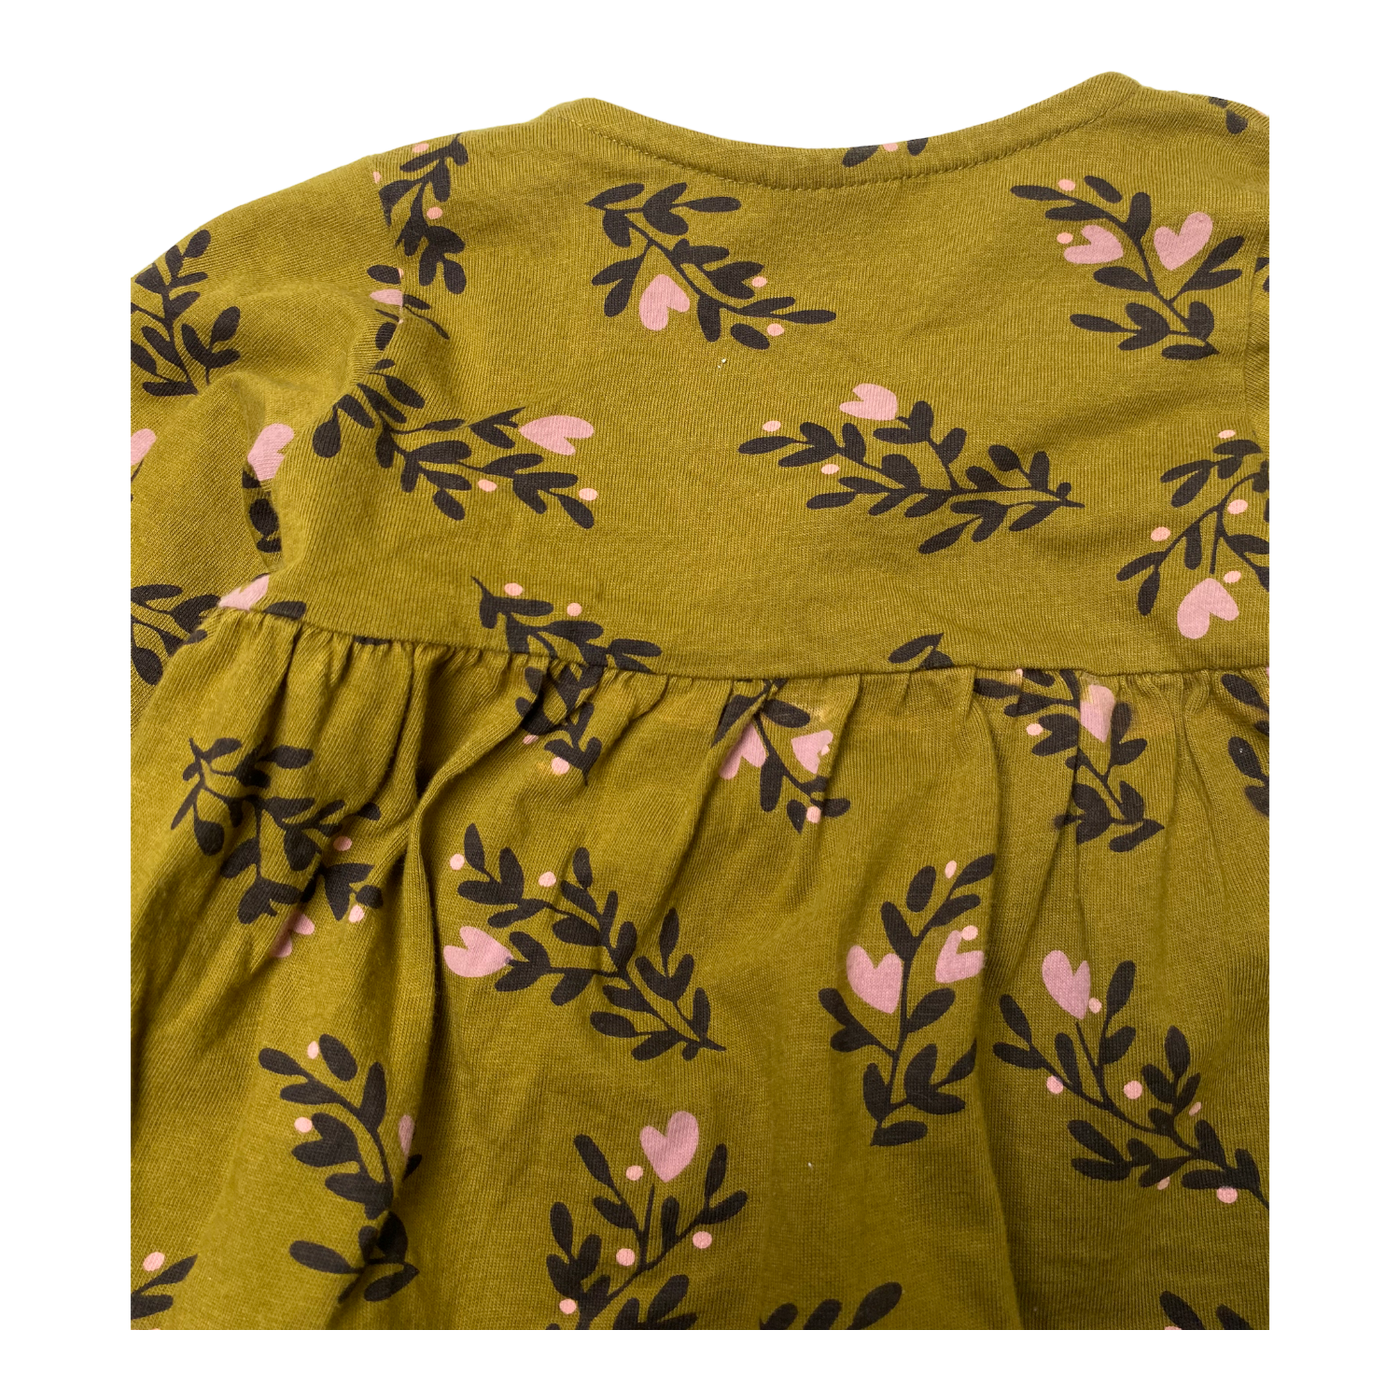 Mainio wrap shirt, secret garden | 74/80cm